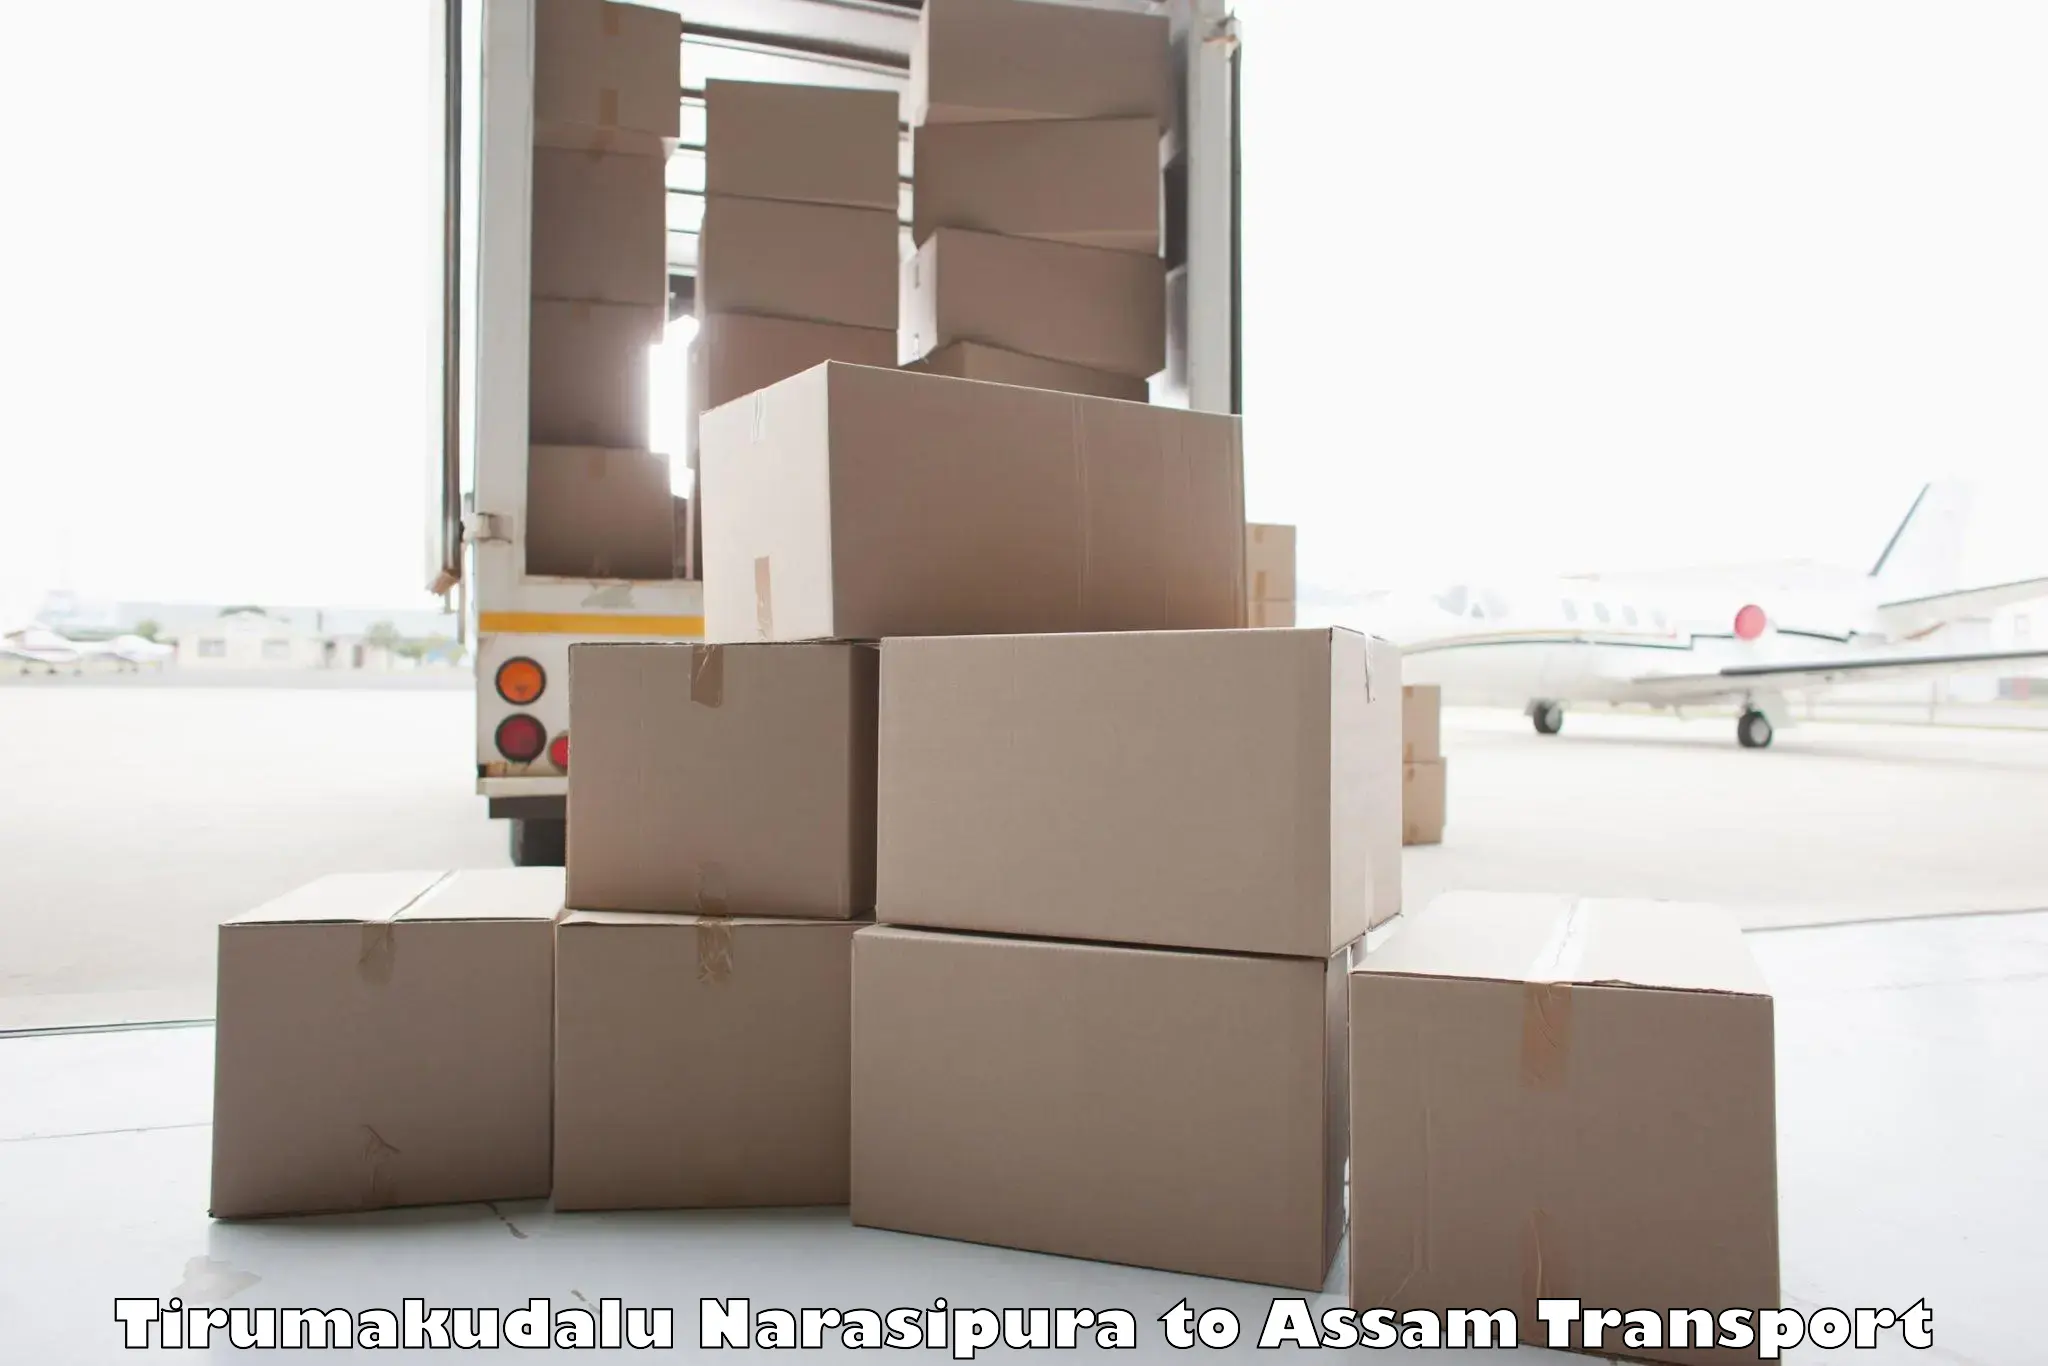 Luggage transport services Tirumakudalu Narasipura to Dhubri